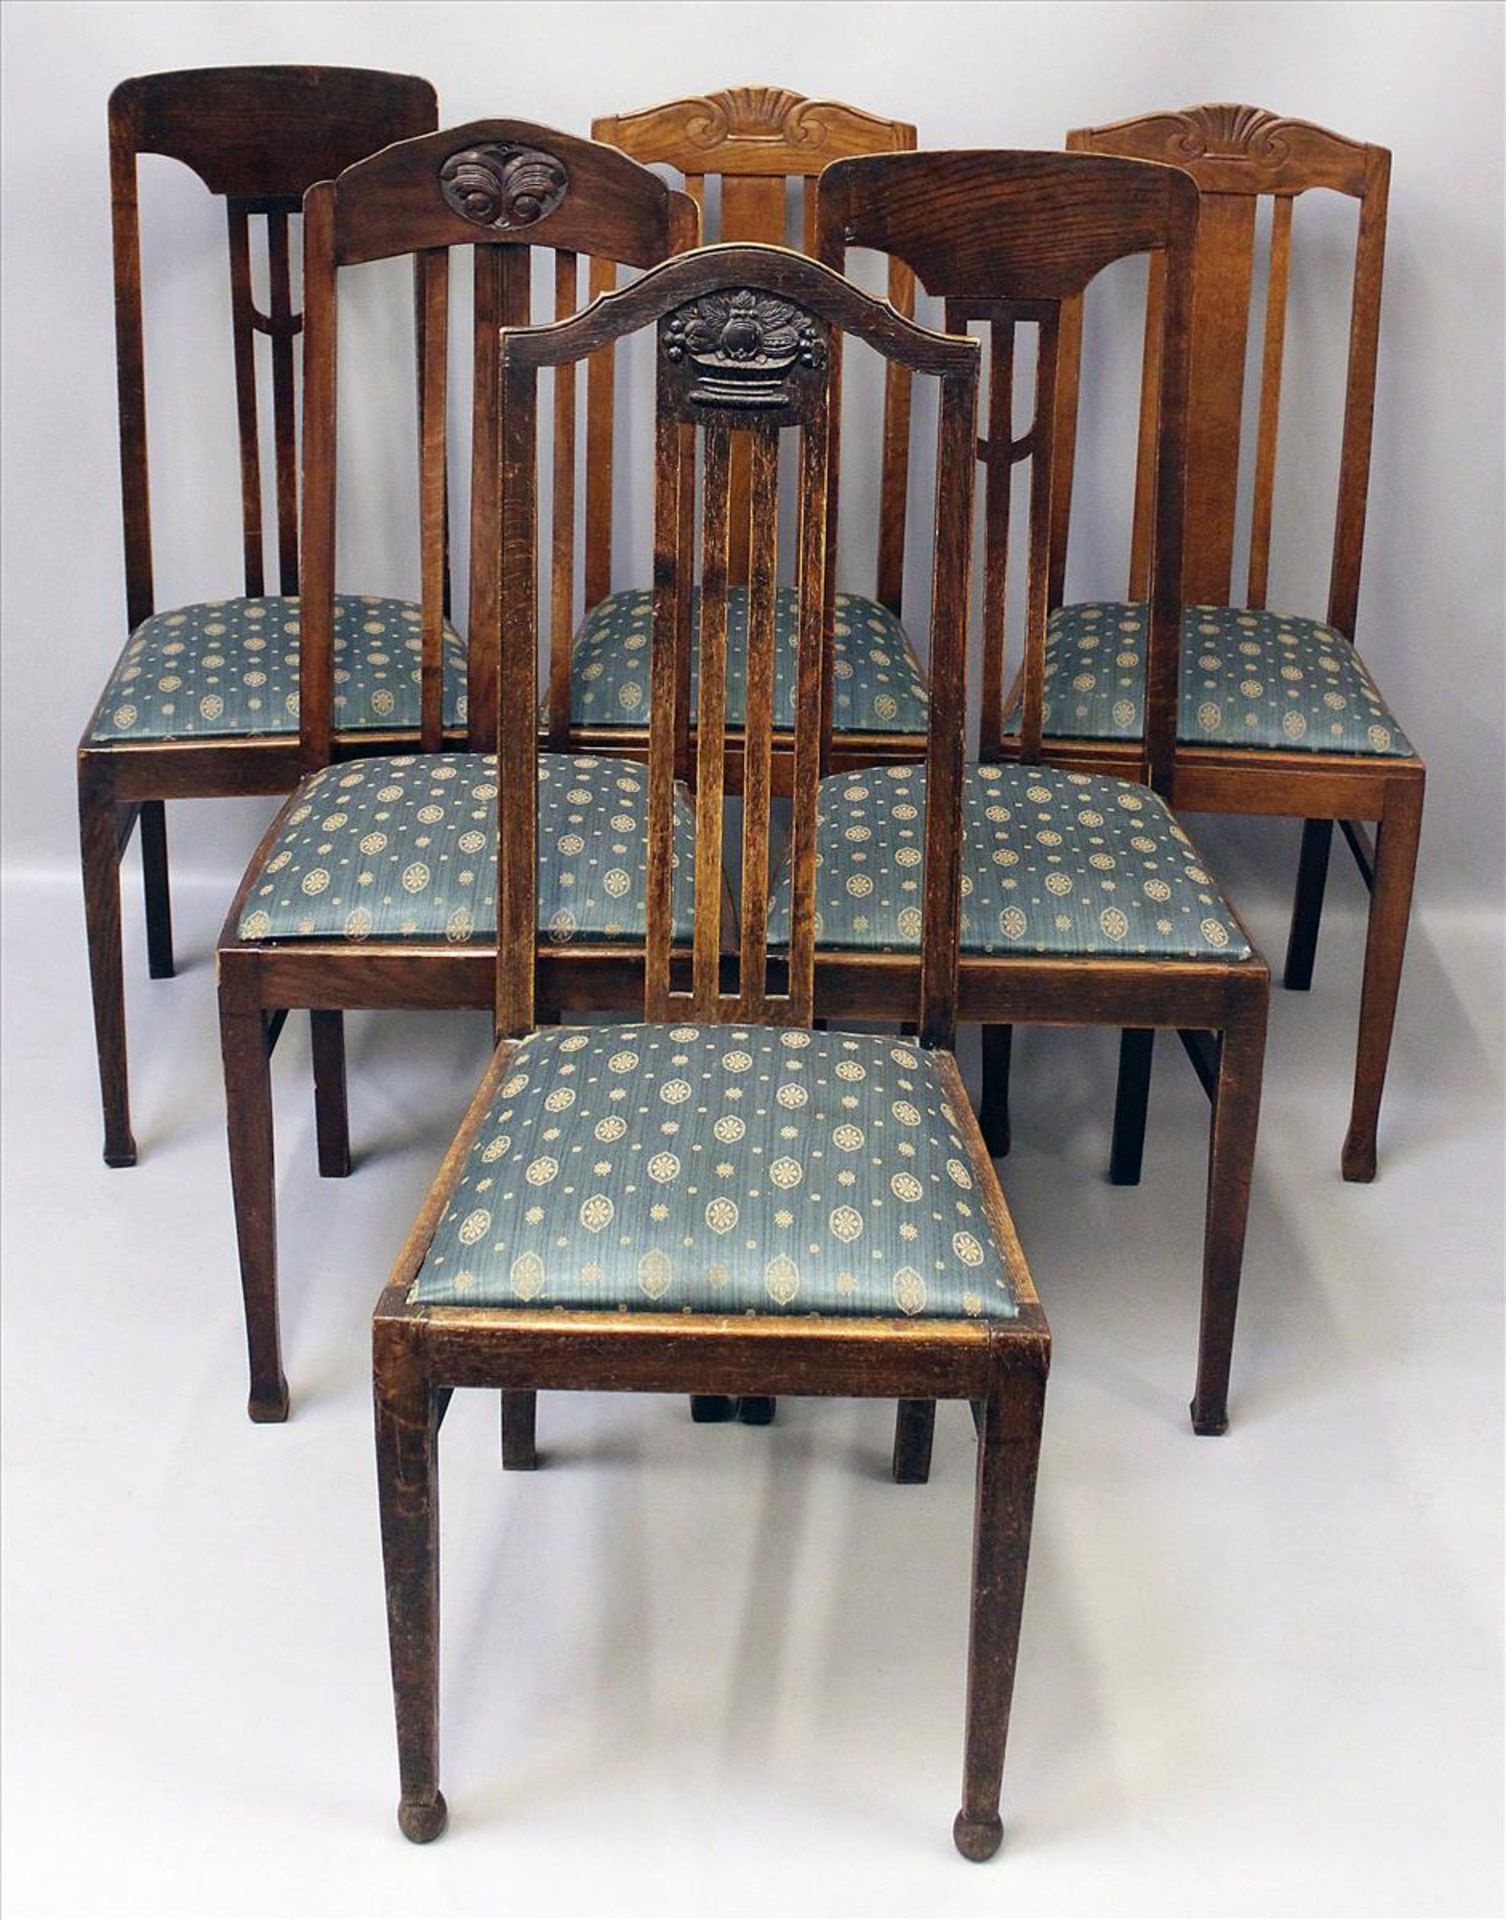 6 Stühle.Eiche. Pfostenbeine, Rückenlehnen teils mit geschnitzten Elementen. Sitz gepolstert. Um